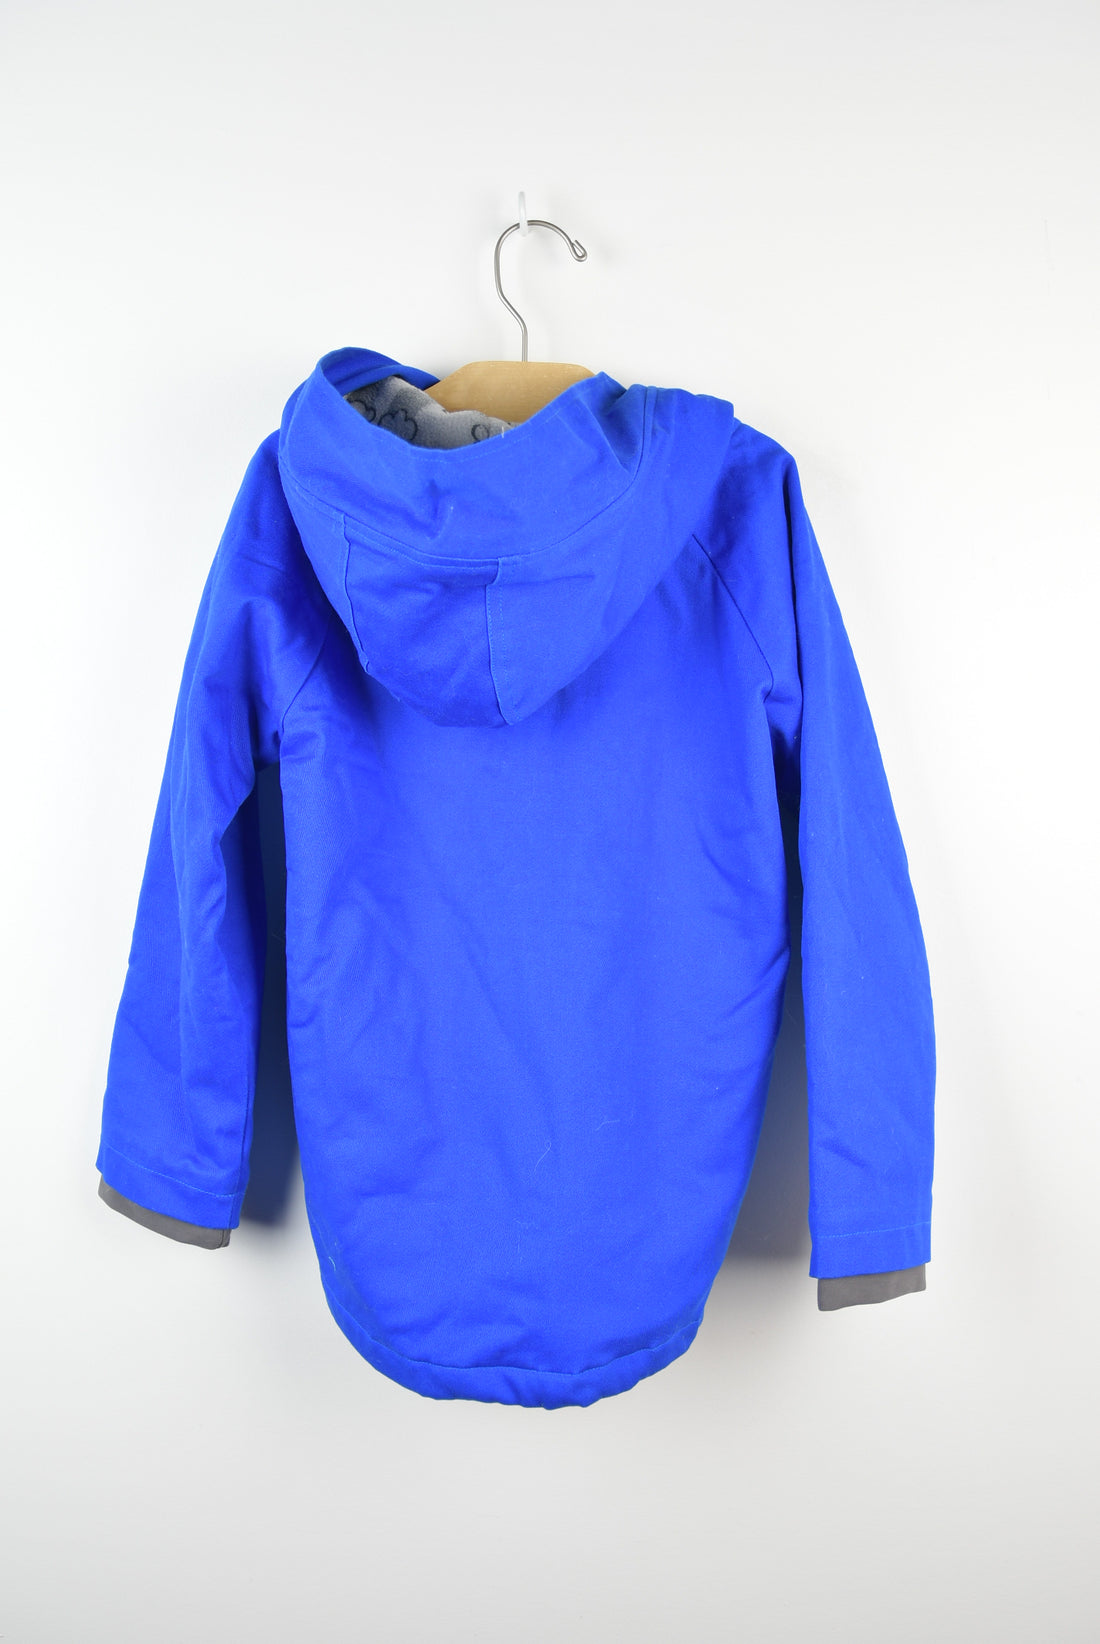 Blue Fleece Lined Jacket - BNWT -  6Y